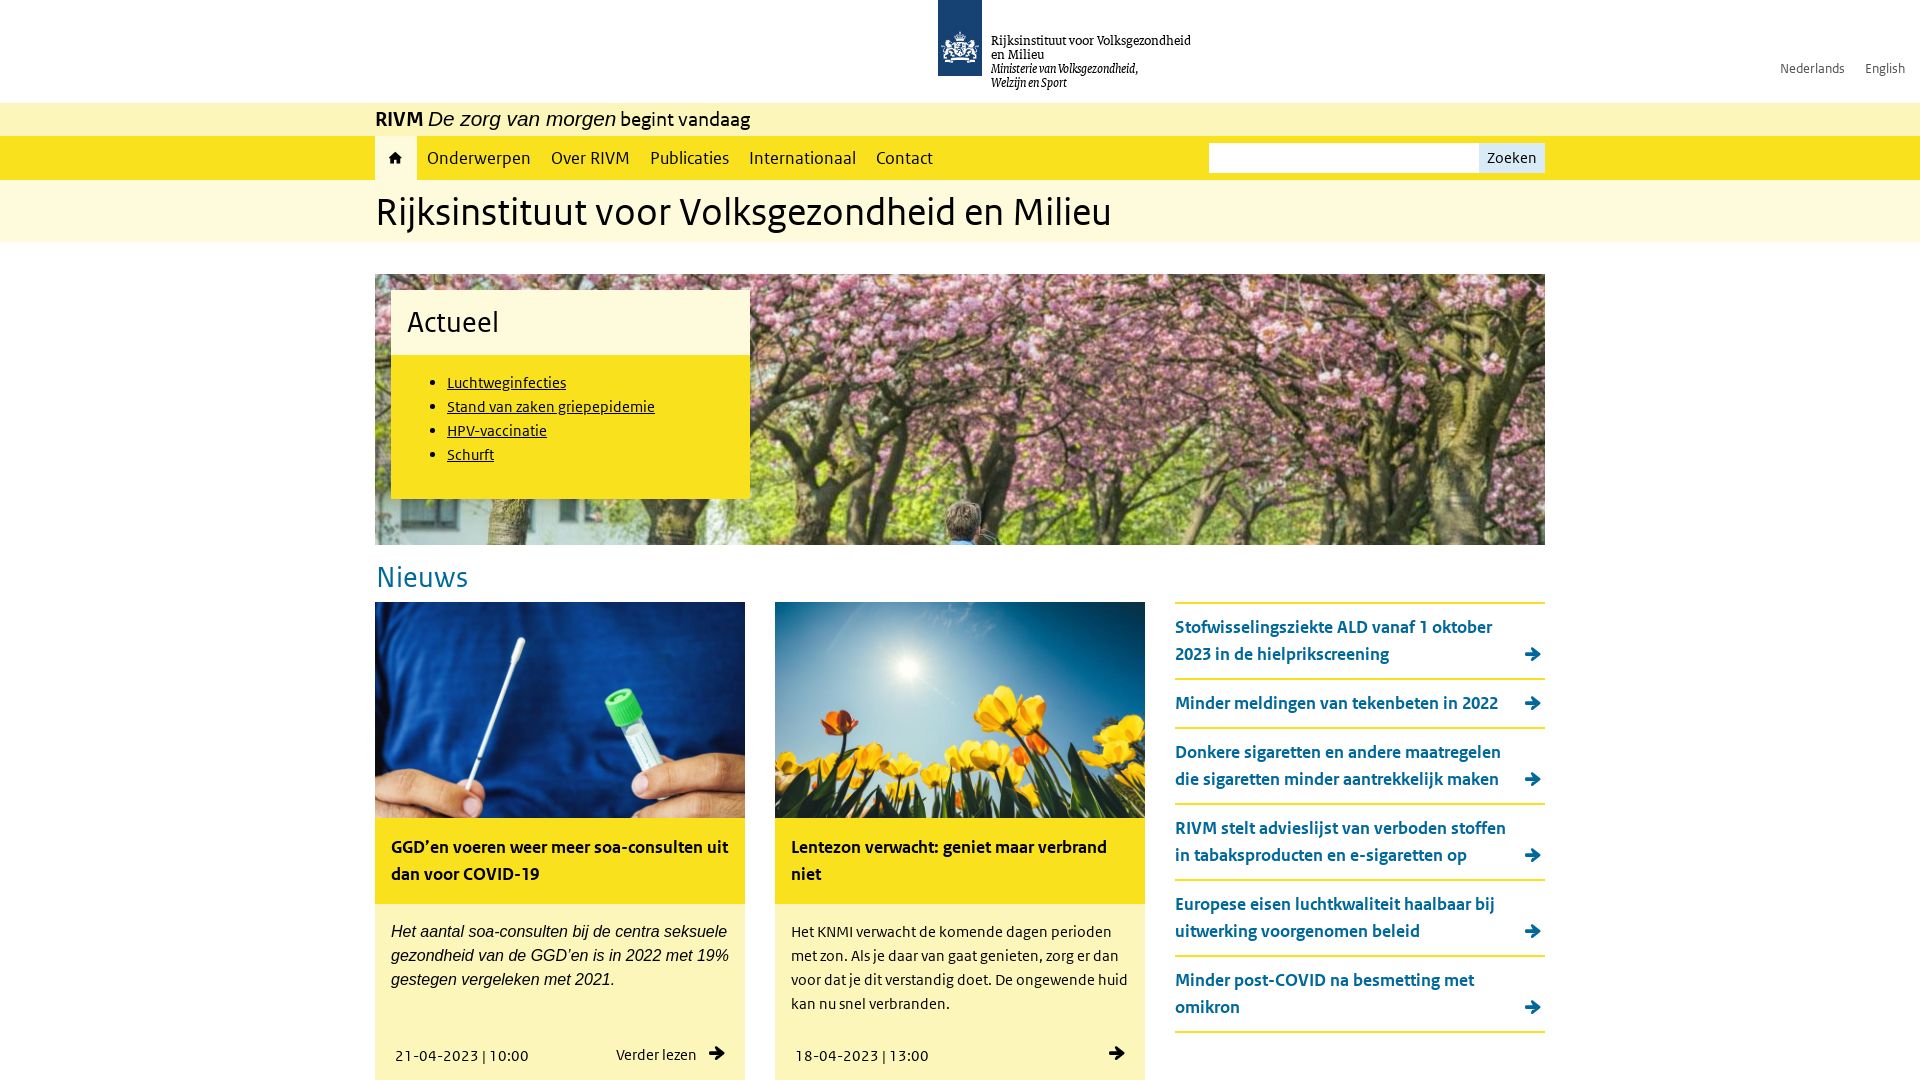 Website status rivm.nl is   ONLINE